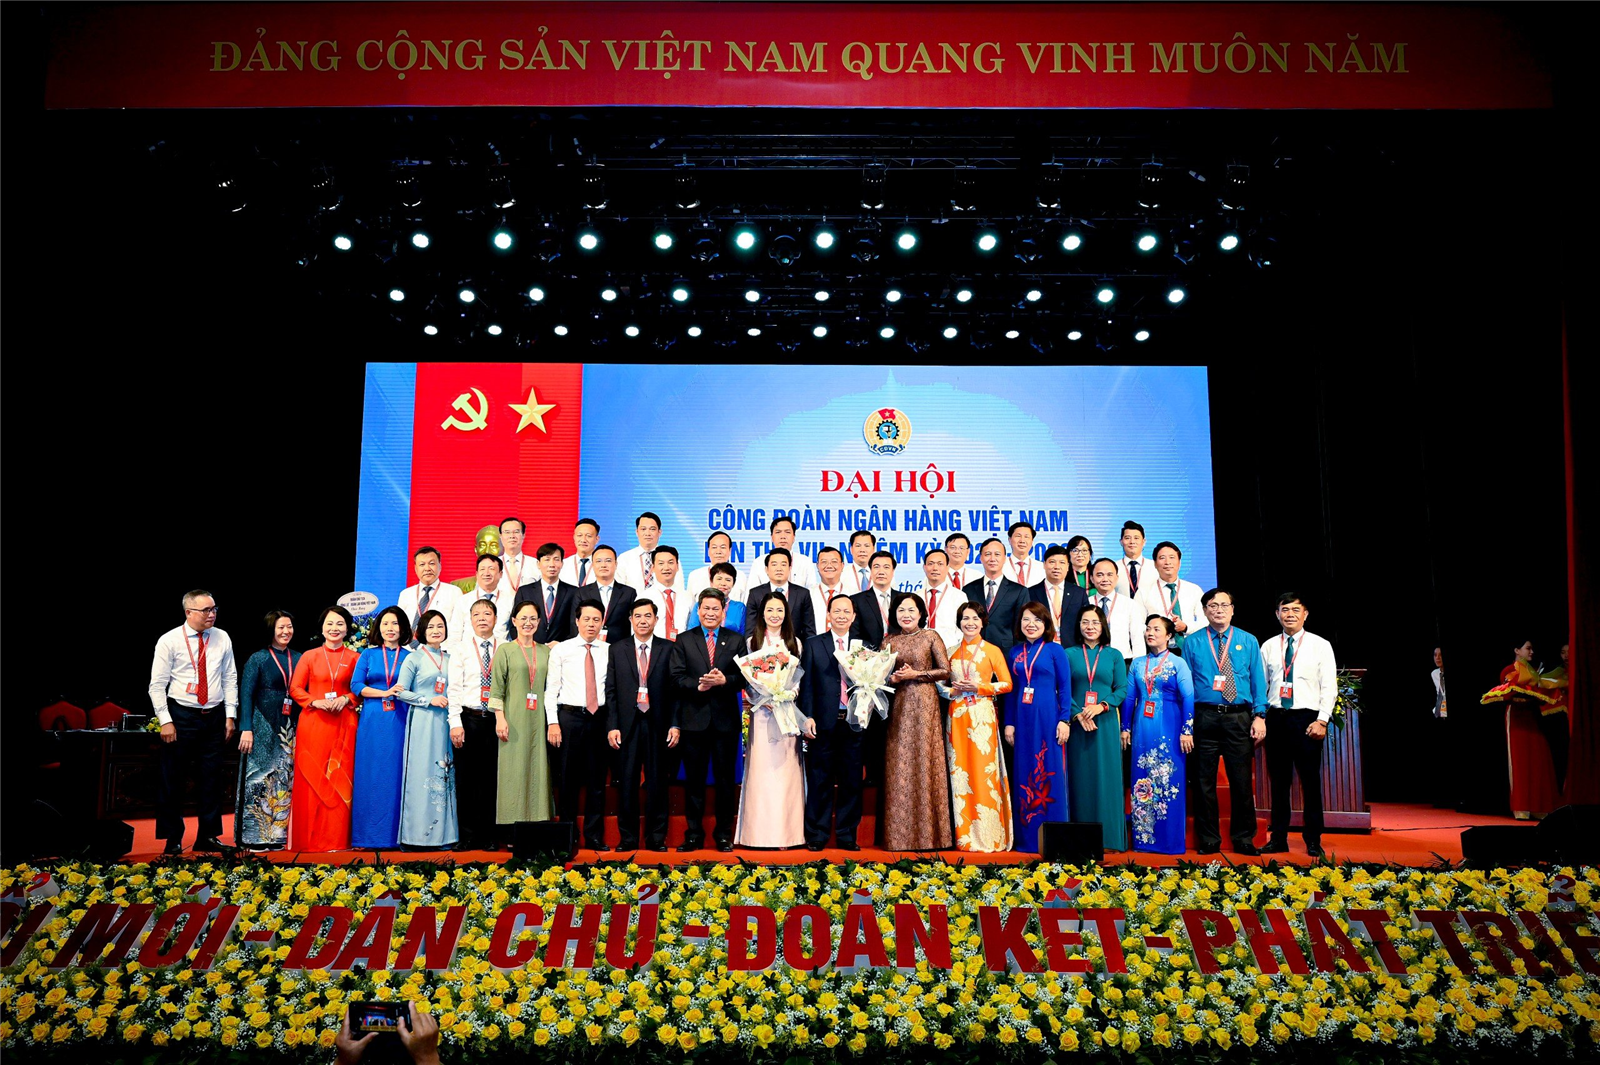 Công đoàn Ngân hàng Việt Nam đổi mới hoạt động, tích cực chăm lo đời sống đoàn viên, người lao động